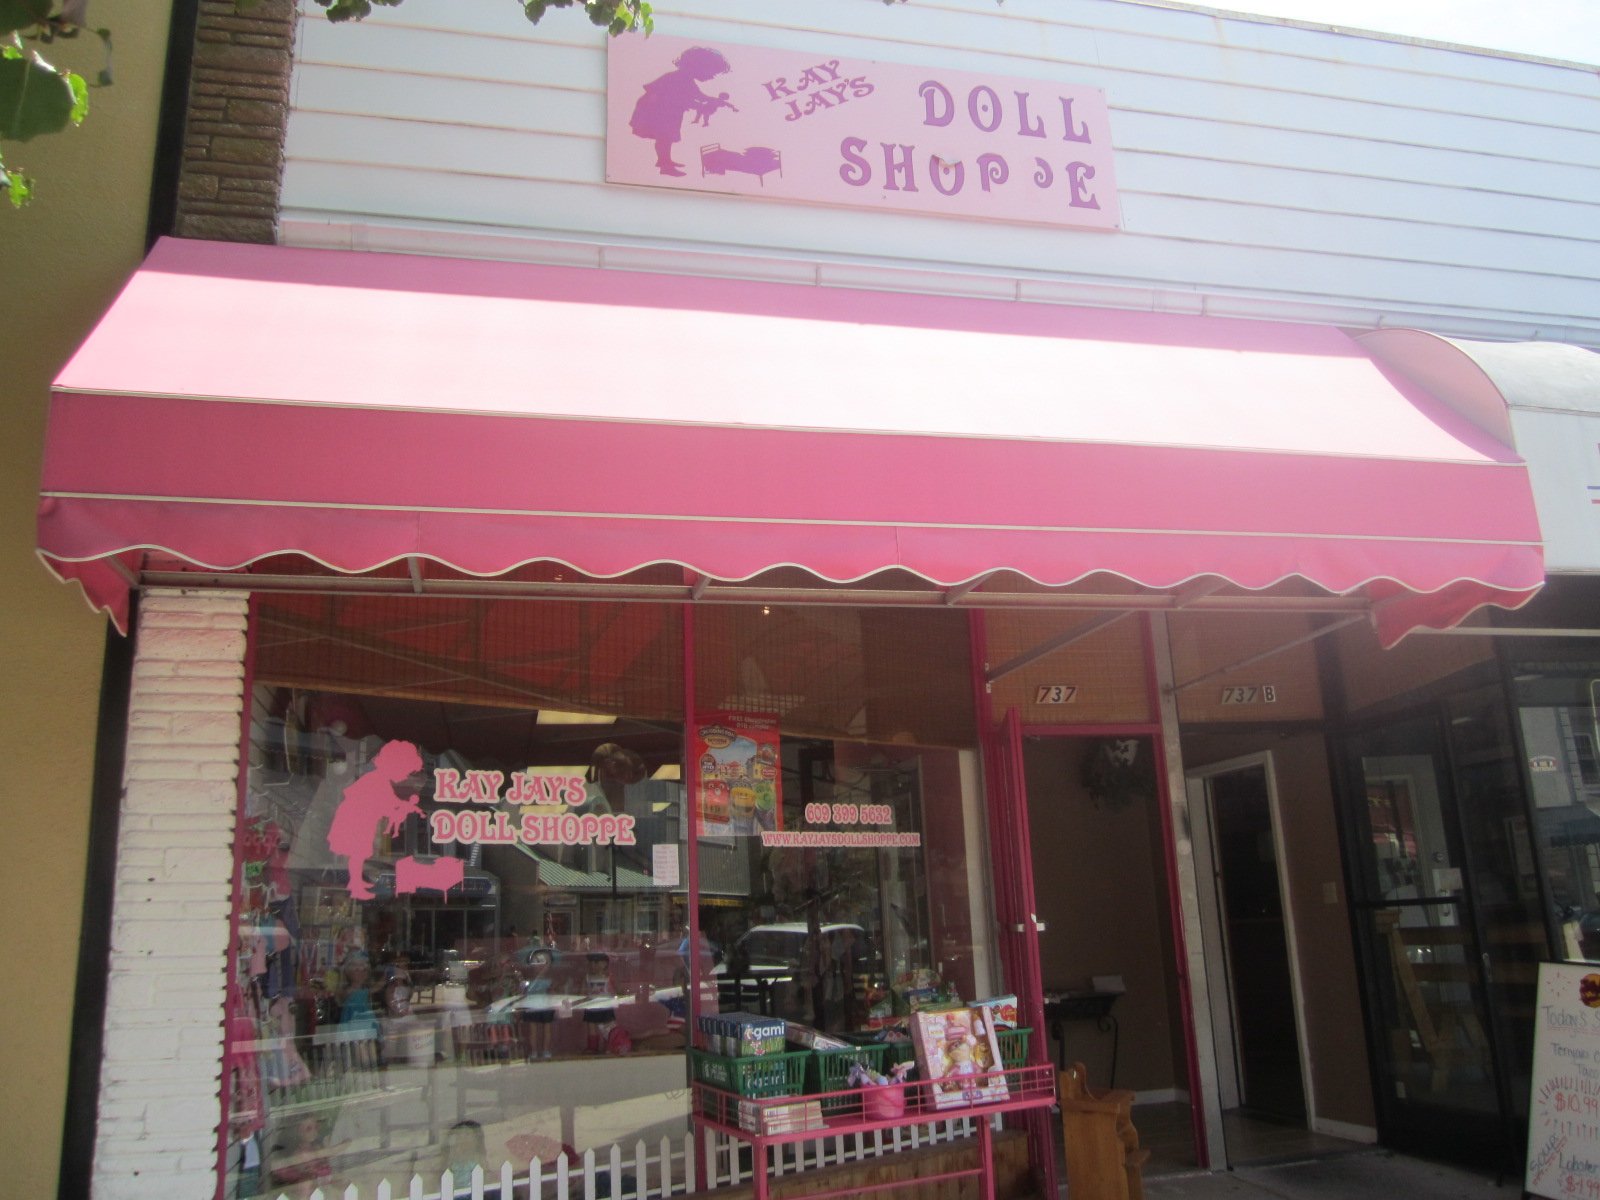 Ray Jay's Doll Shoppe